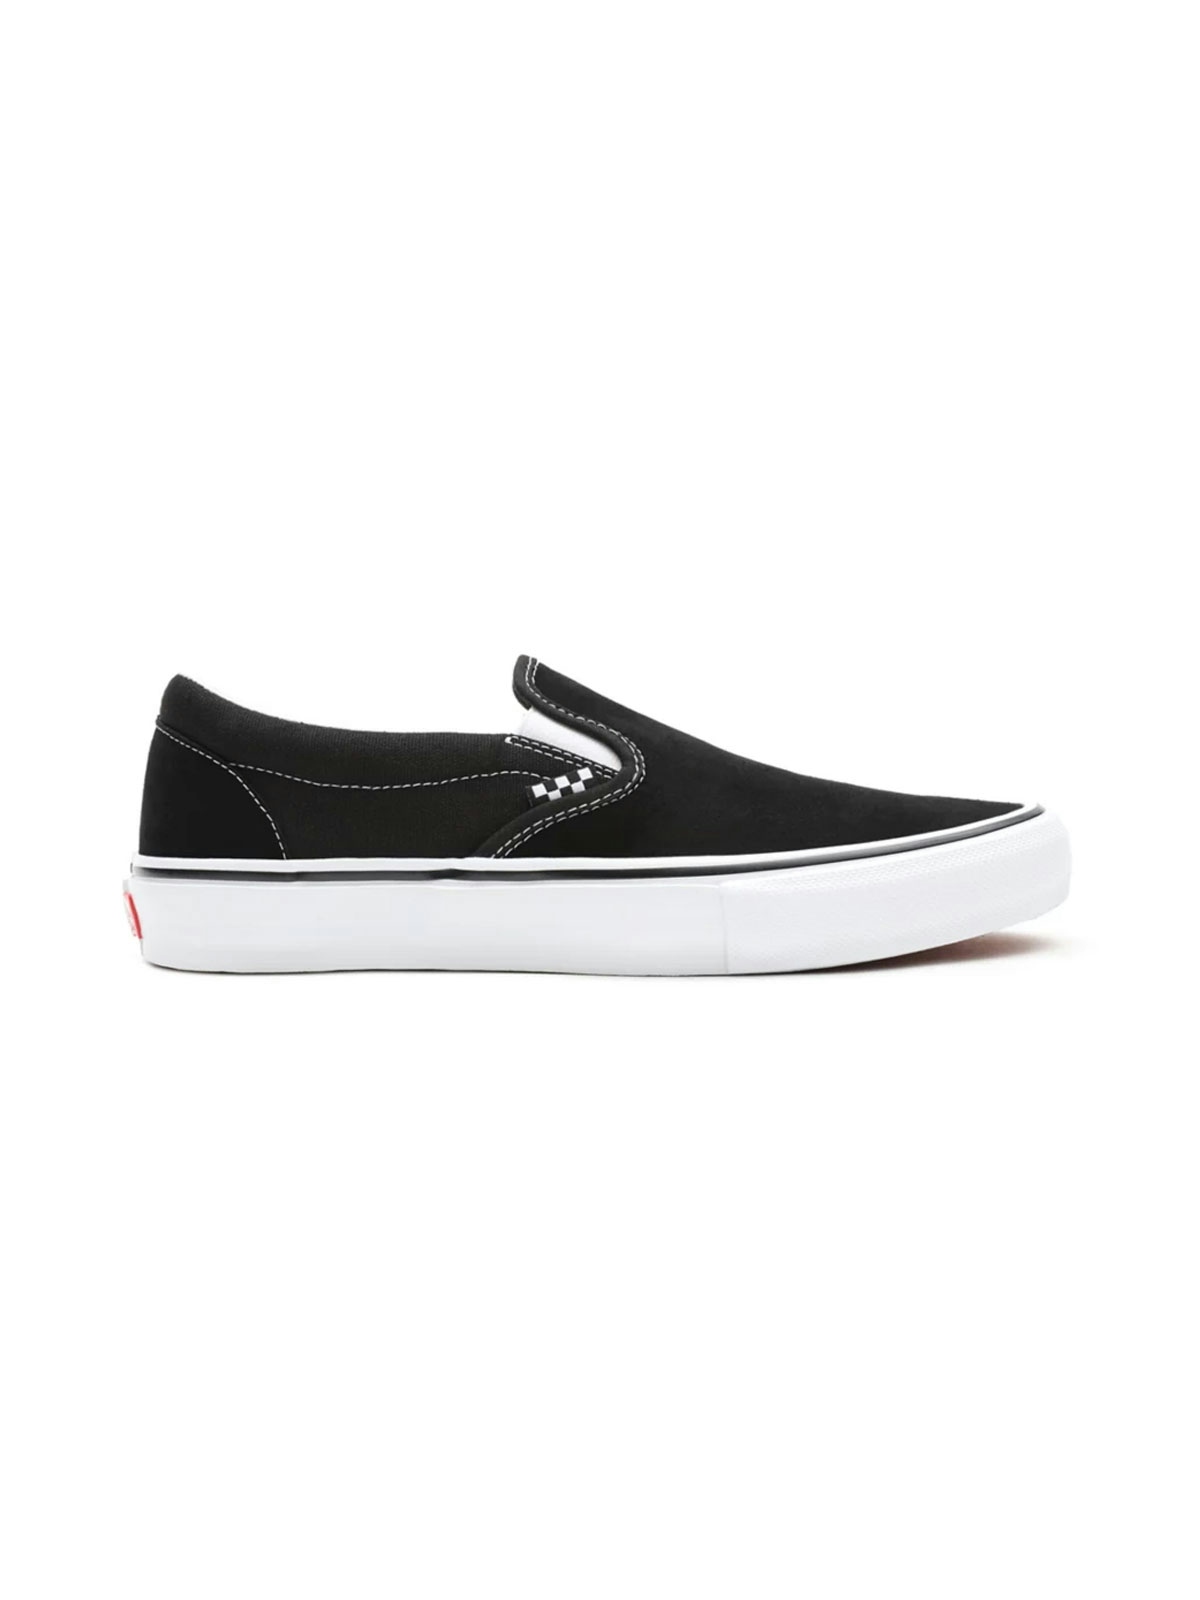 Vans Skate Slip-on Shoes Black/White 2